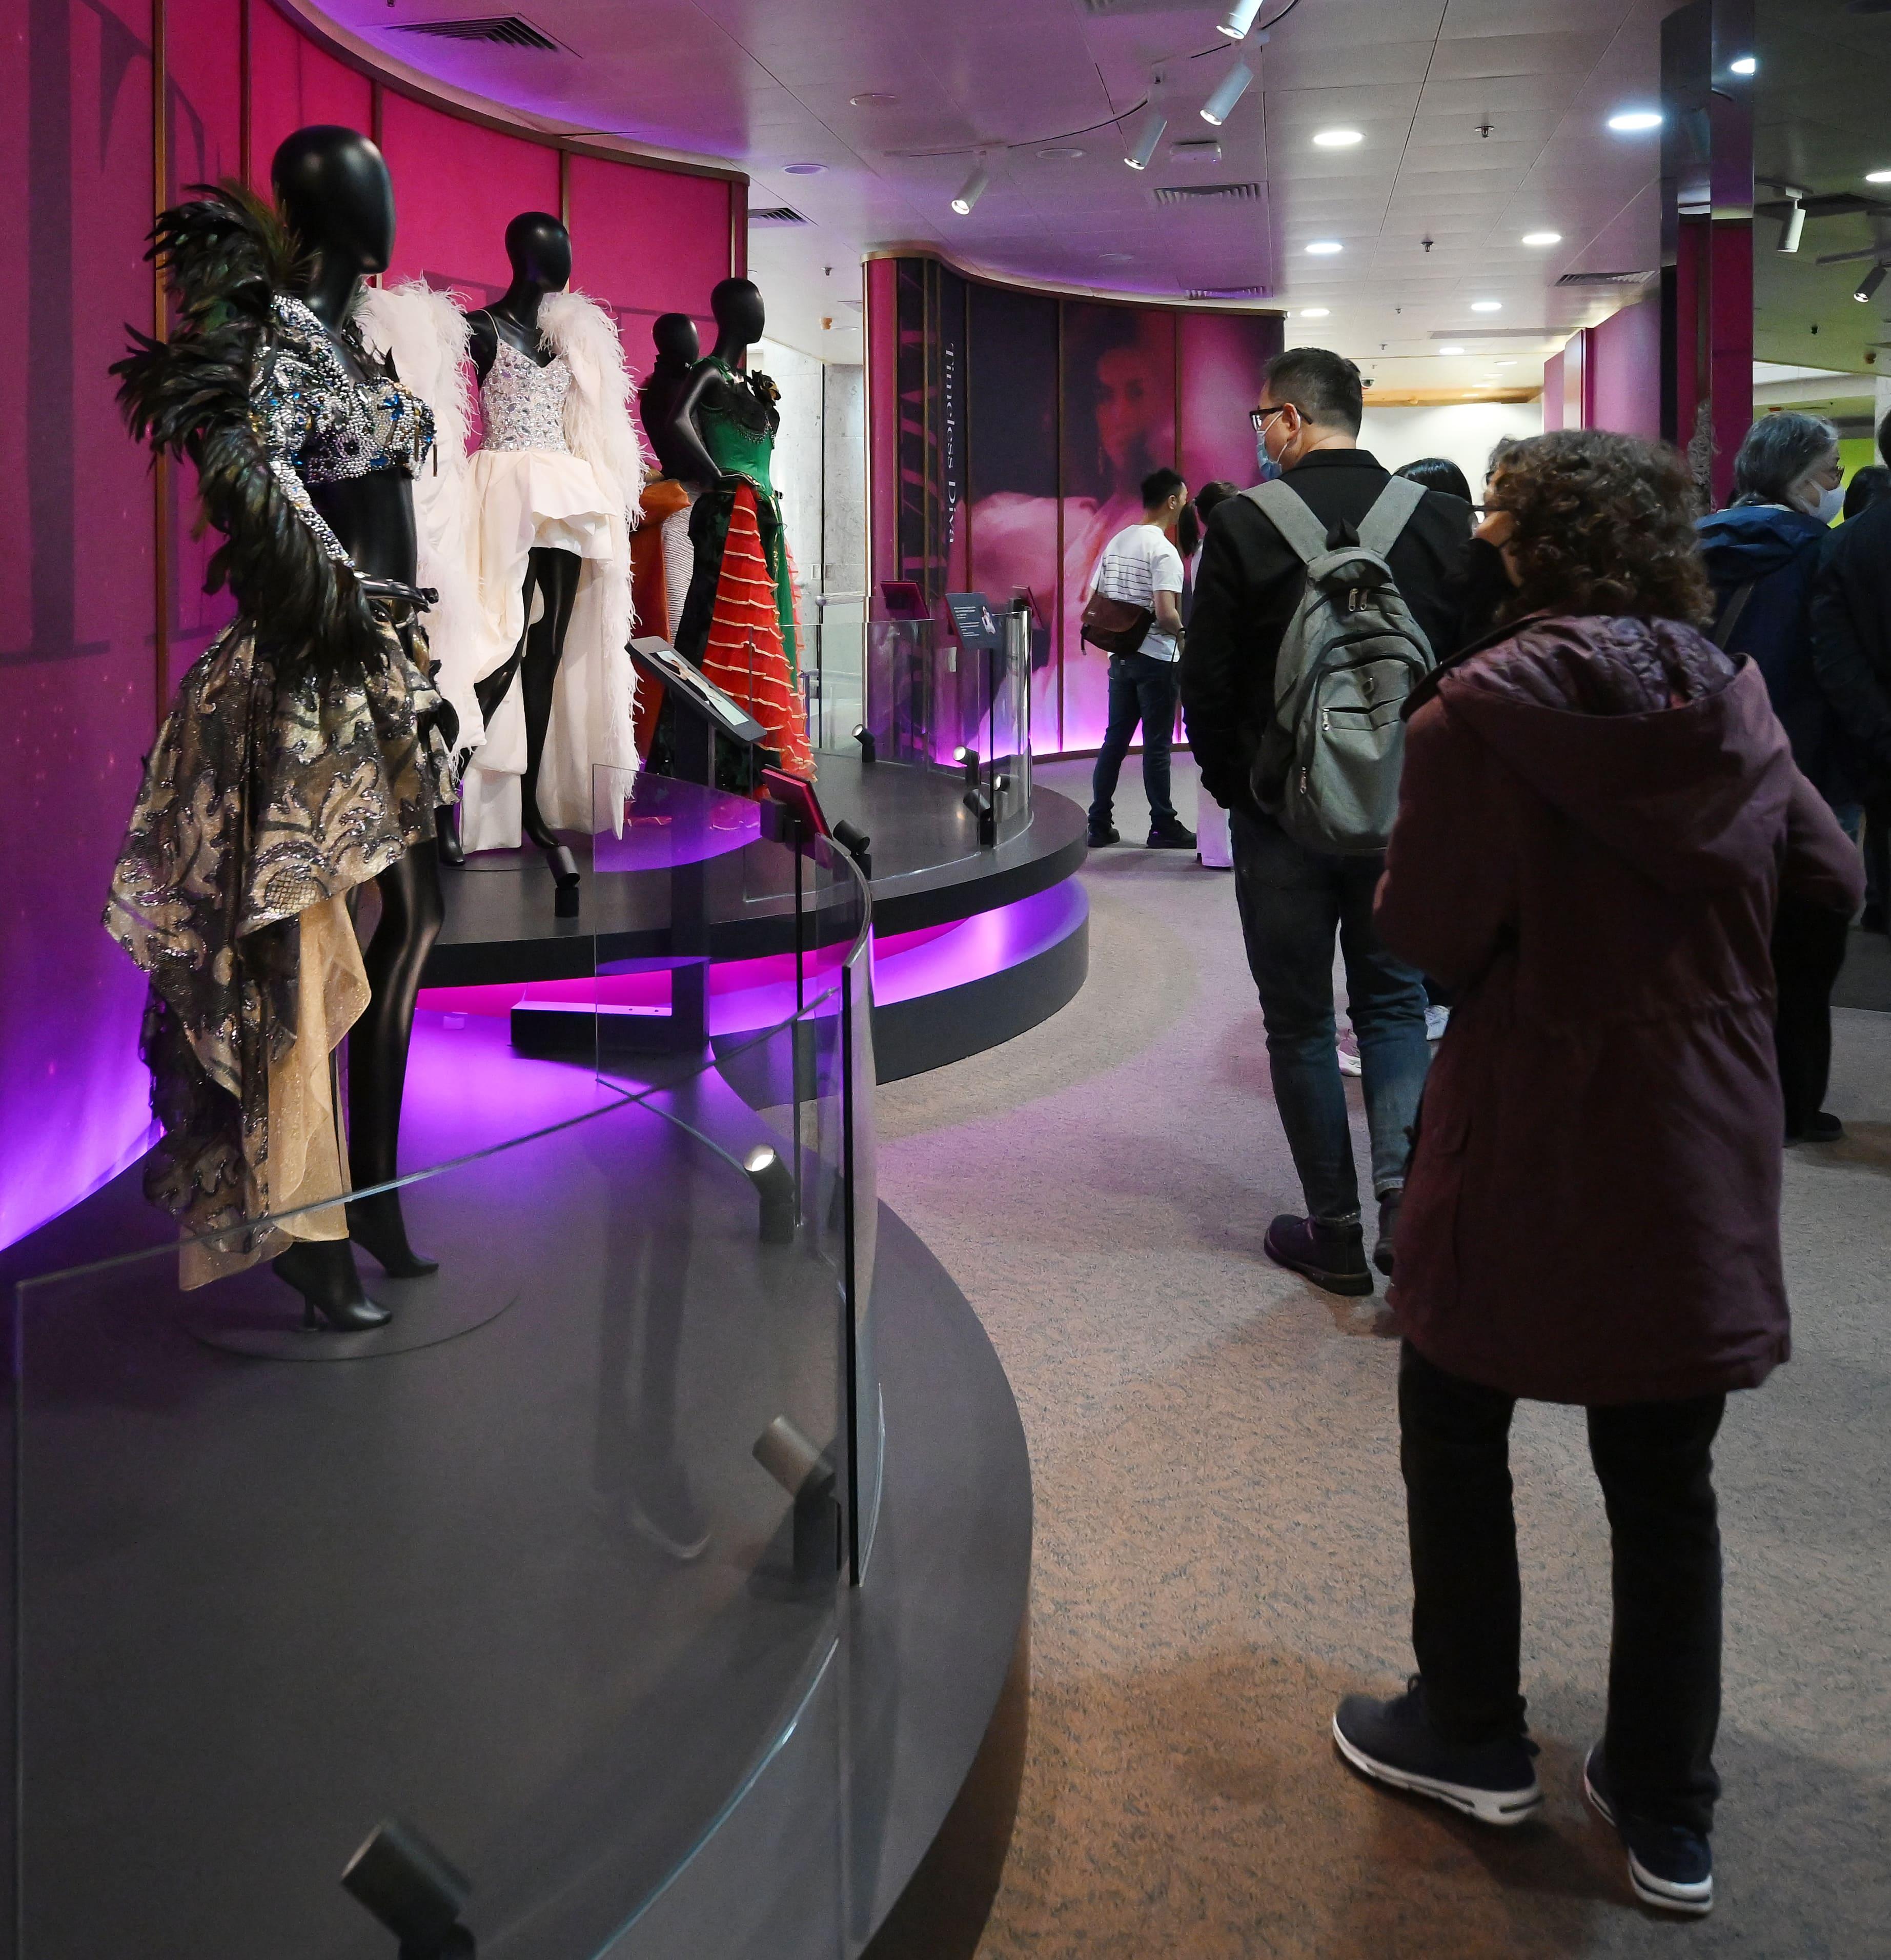 香港文化博物館現正舉行的「絕代芳華・梅艷芳」展覽廣受市民及旅客歡迎，自去年十二月二十四日開展至今日（五月二日），已有二十萬人次前來參觀。圖示市民參觀展覽。